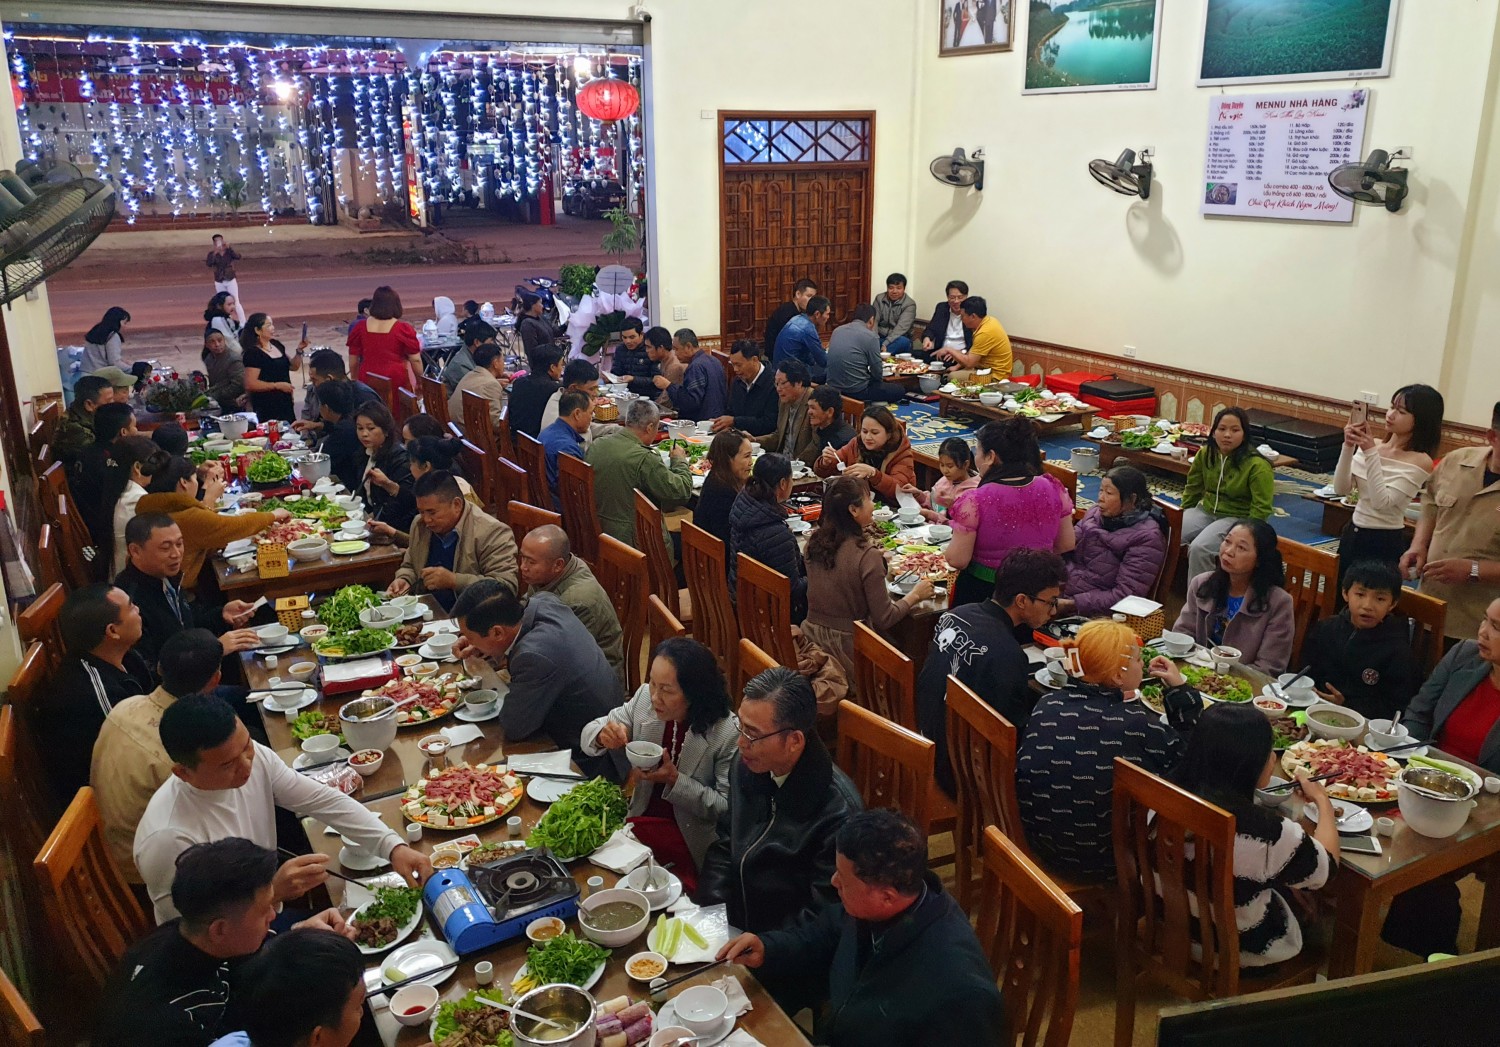 Nhà hàng Mộc Châu Đồng Duyên Ẩm thực Tây Bắc - lẩu, thắng cố bò cỏ ngon tuyệt